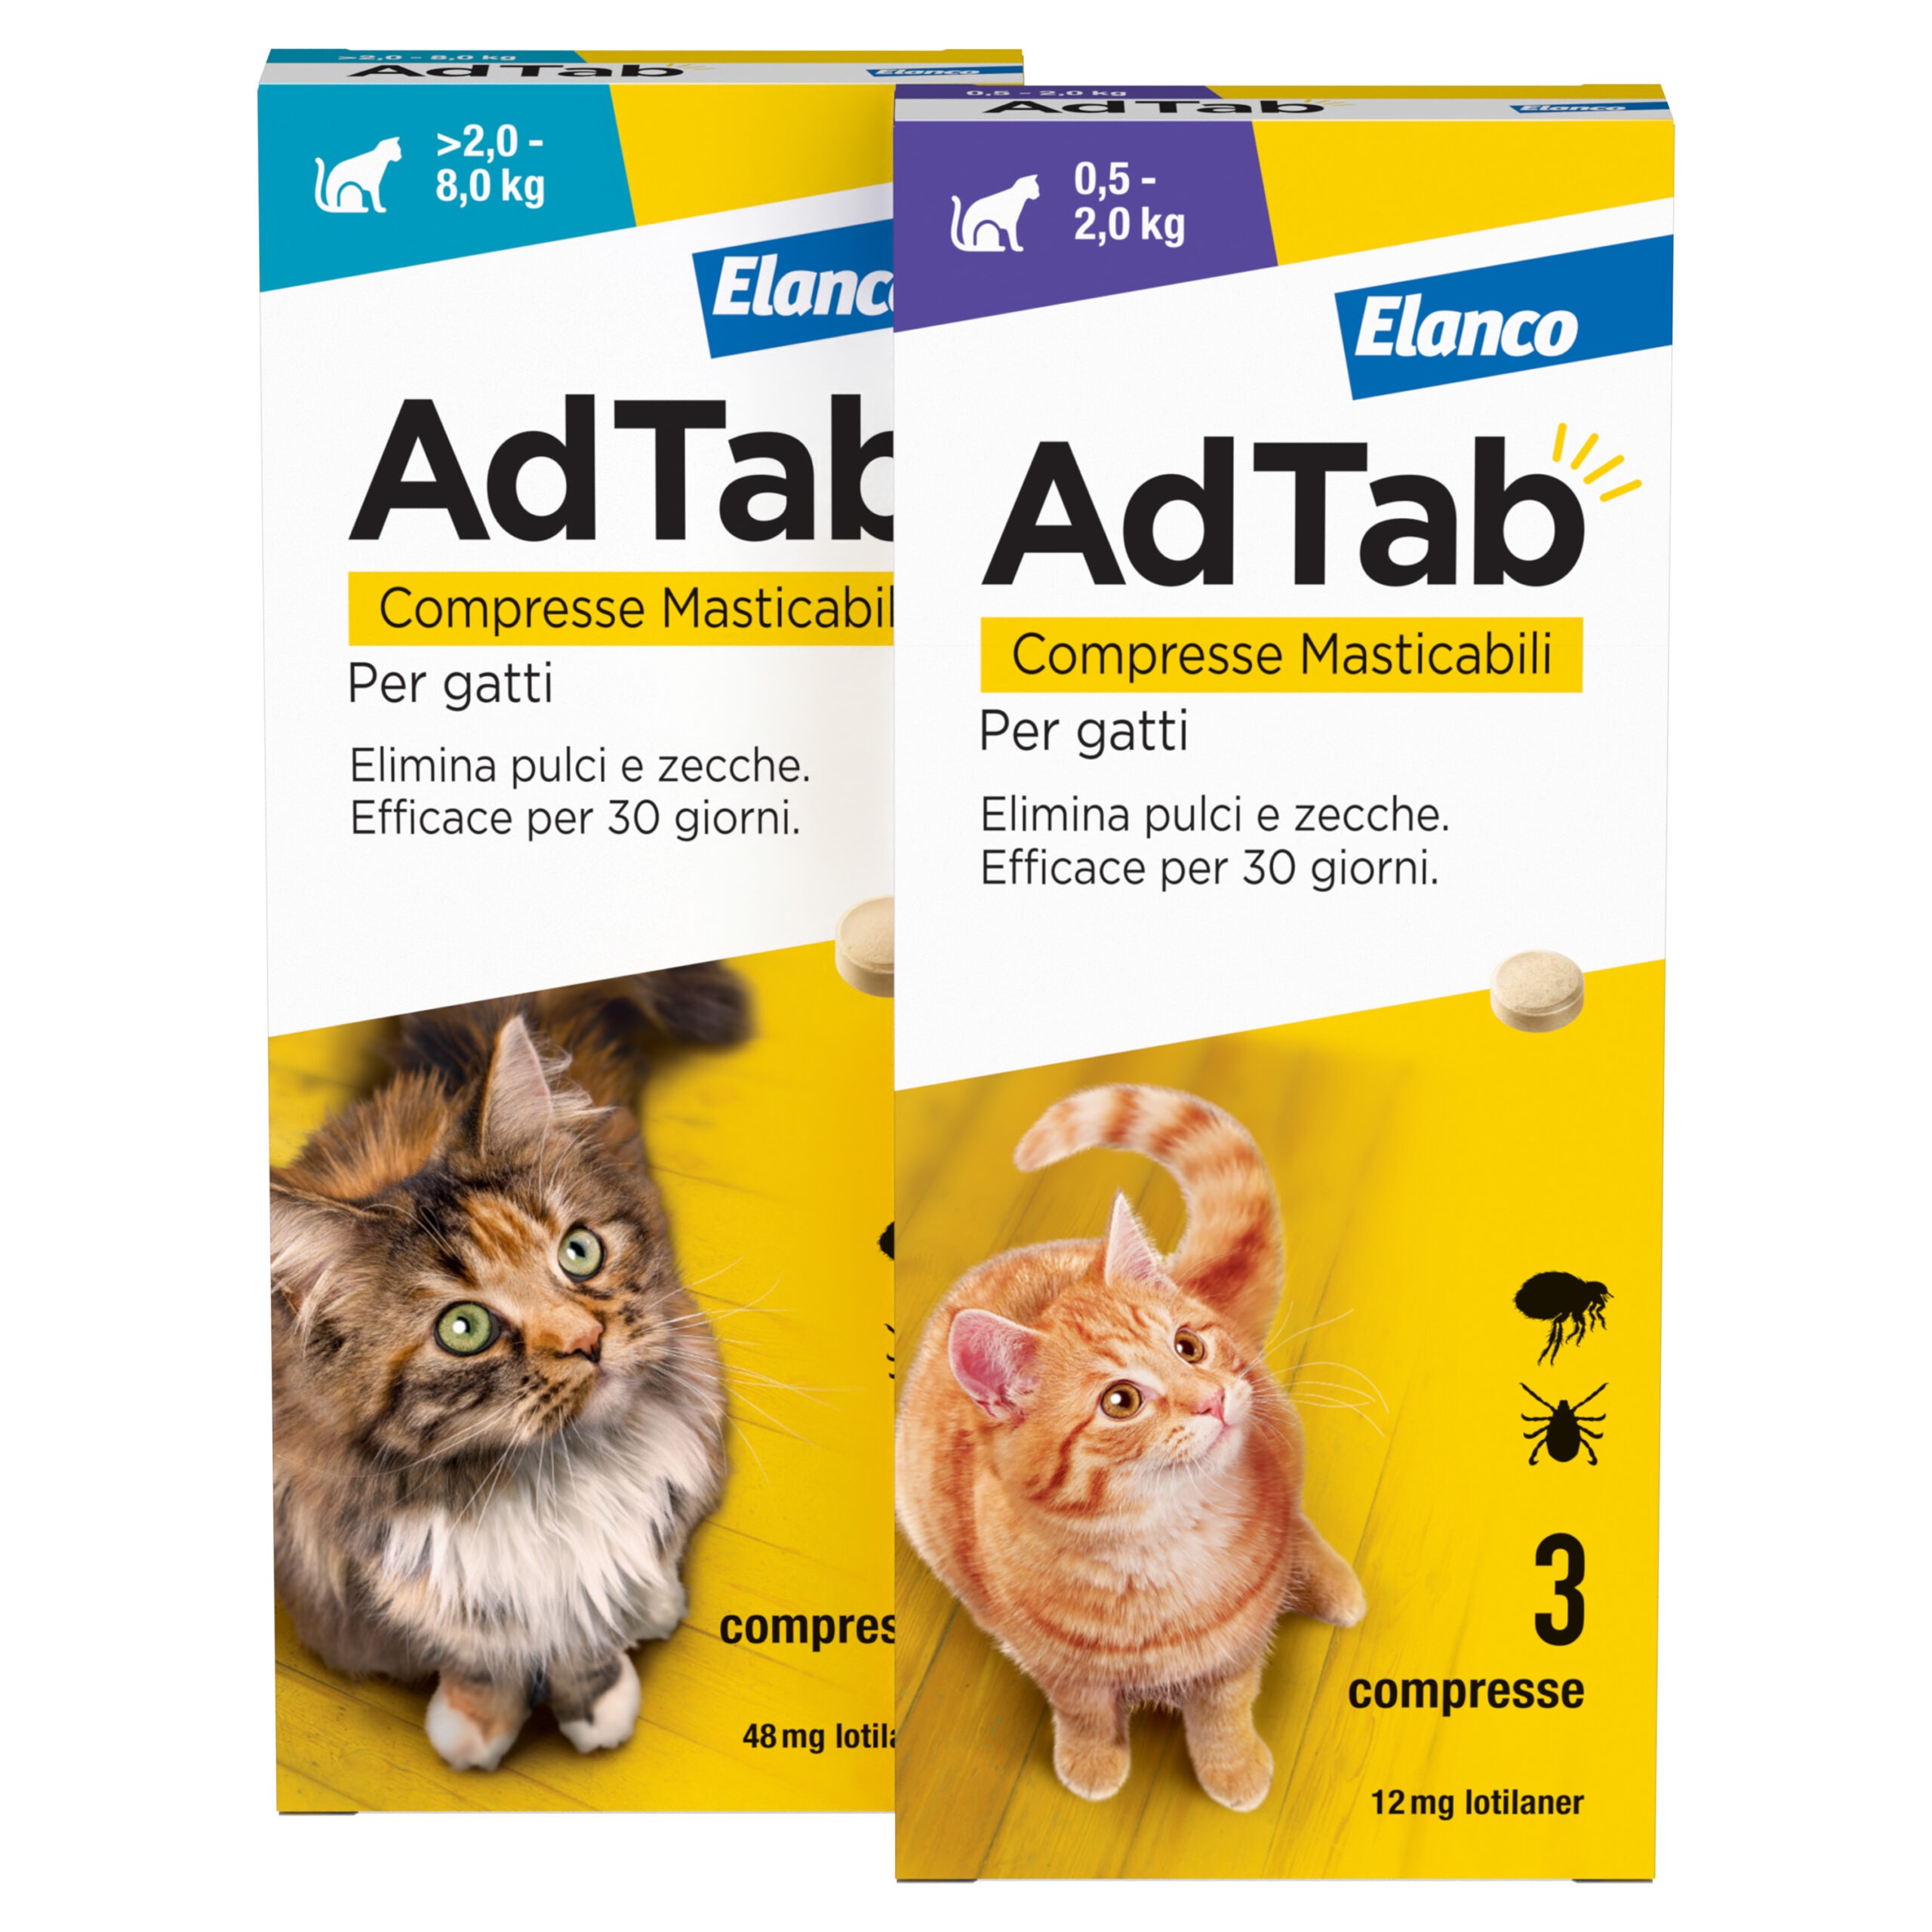 Ad Tab per gatto – 3 compresse masticabili